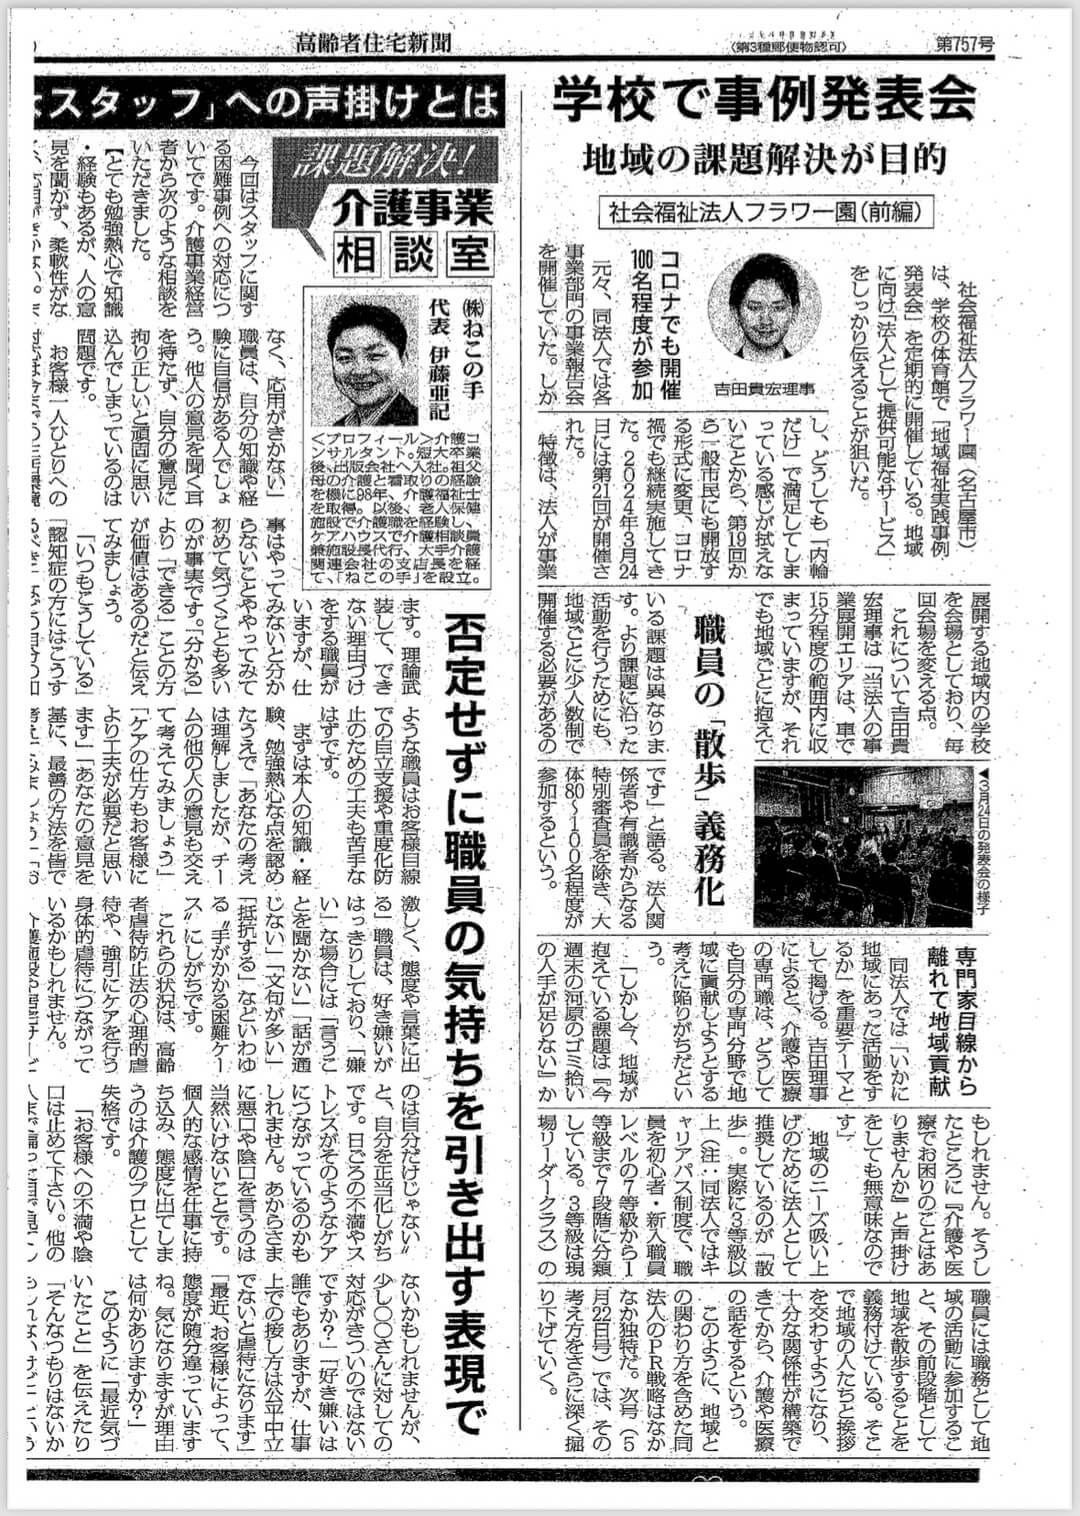 弊社代表取締役の吉田貴宏が統括を務める社会福祉法人フラワー園の地域に向けた取り組みを高齢者住宅新聞に掲載いただきました。